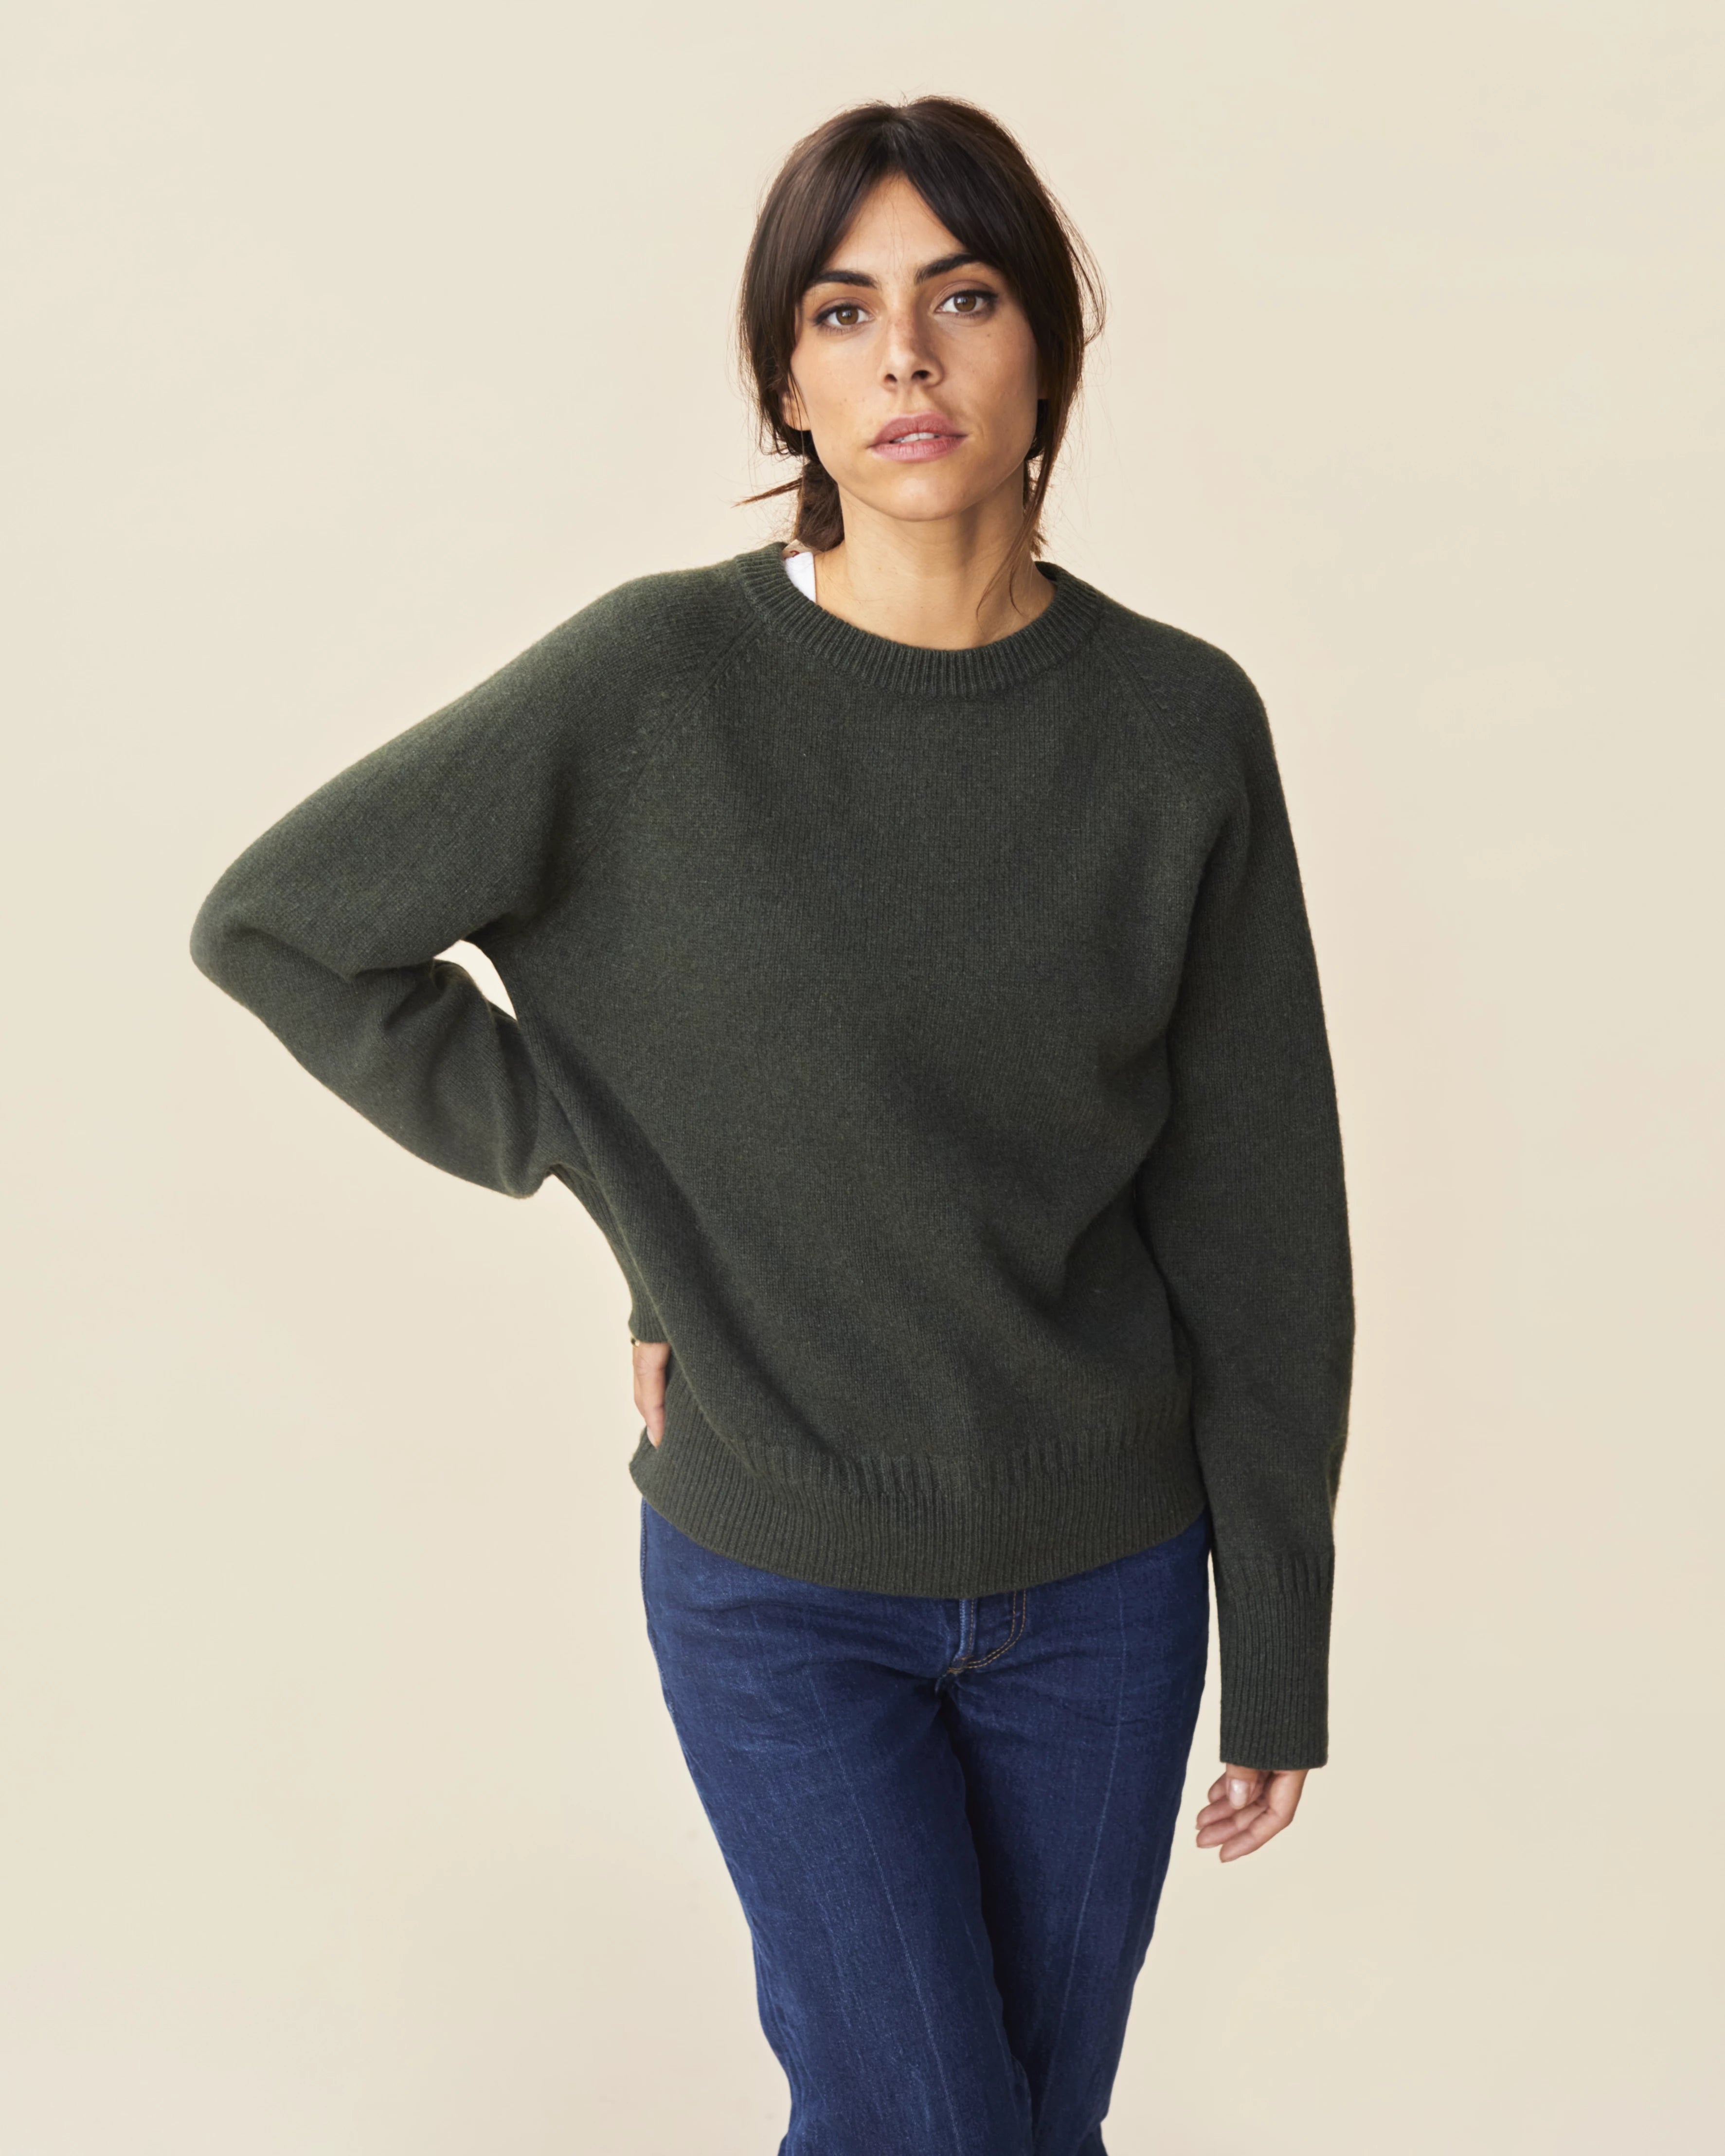 Sweater Crewneck in Cashmere Khaki Women